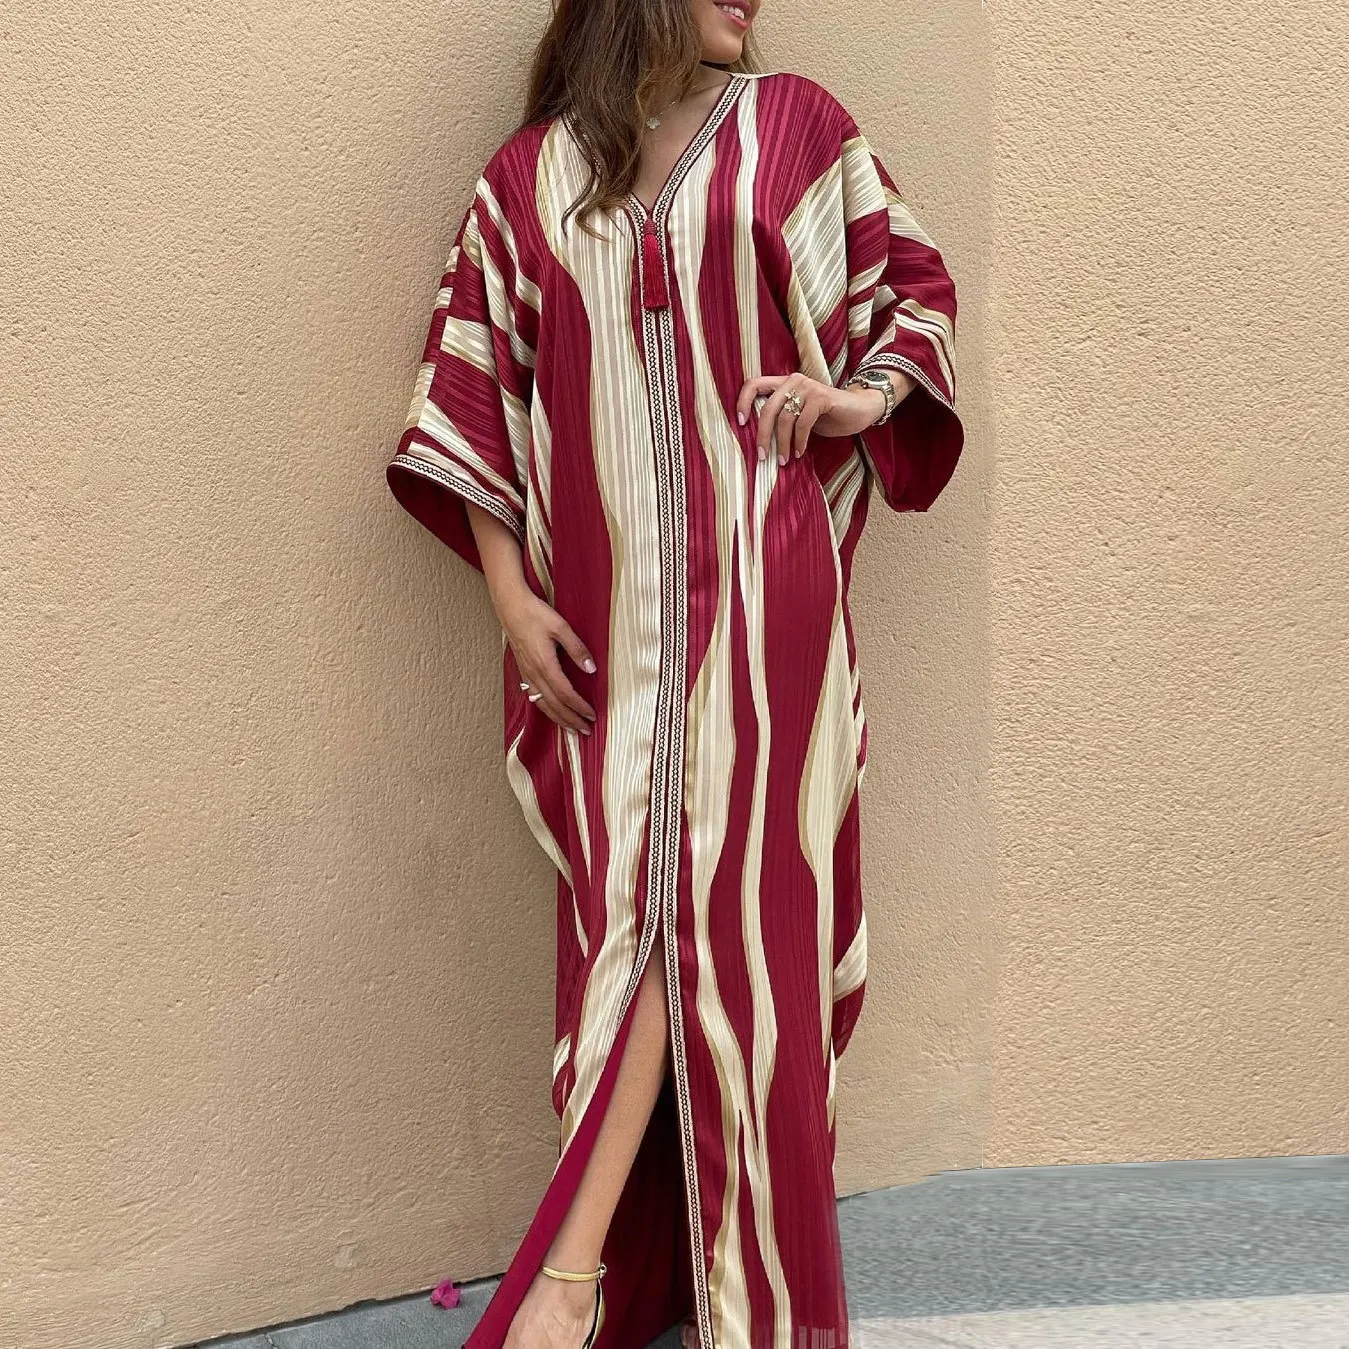 Abaya Дубай Кафтан мусульманское платье Африканский принт полосатые вечерние платья для женщин арабское кимоно халат Boubou Djellaba Femme